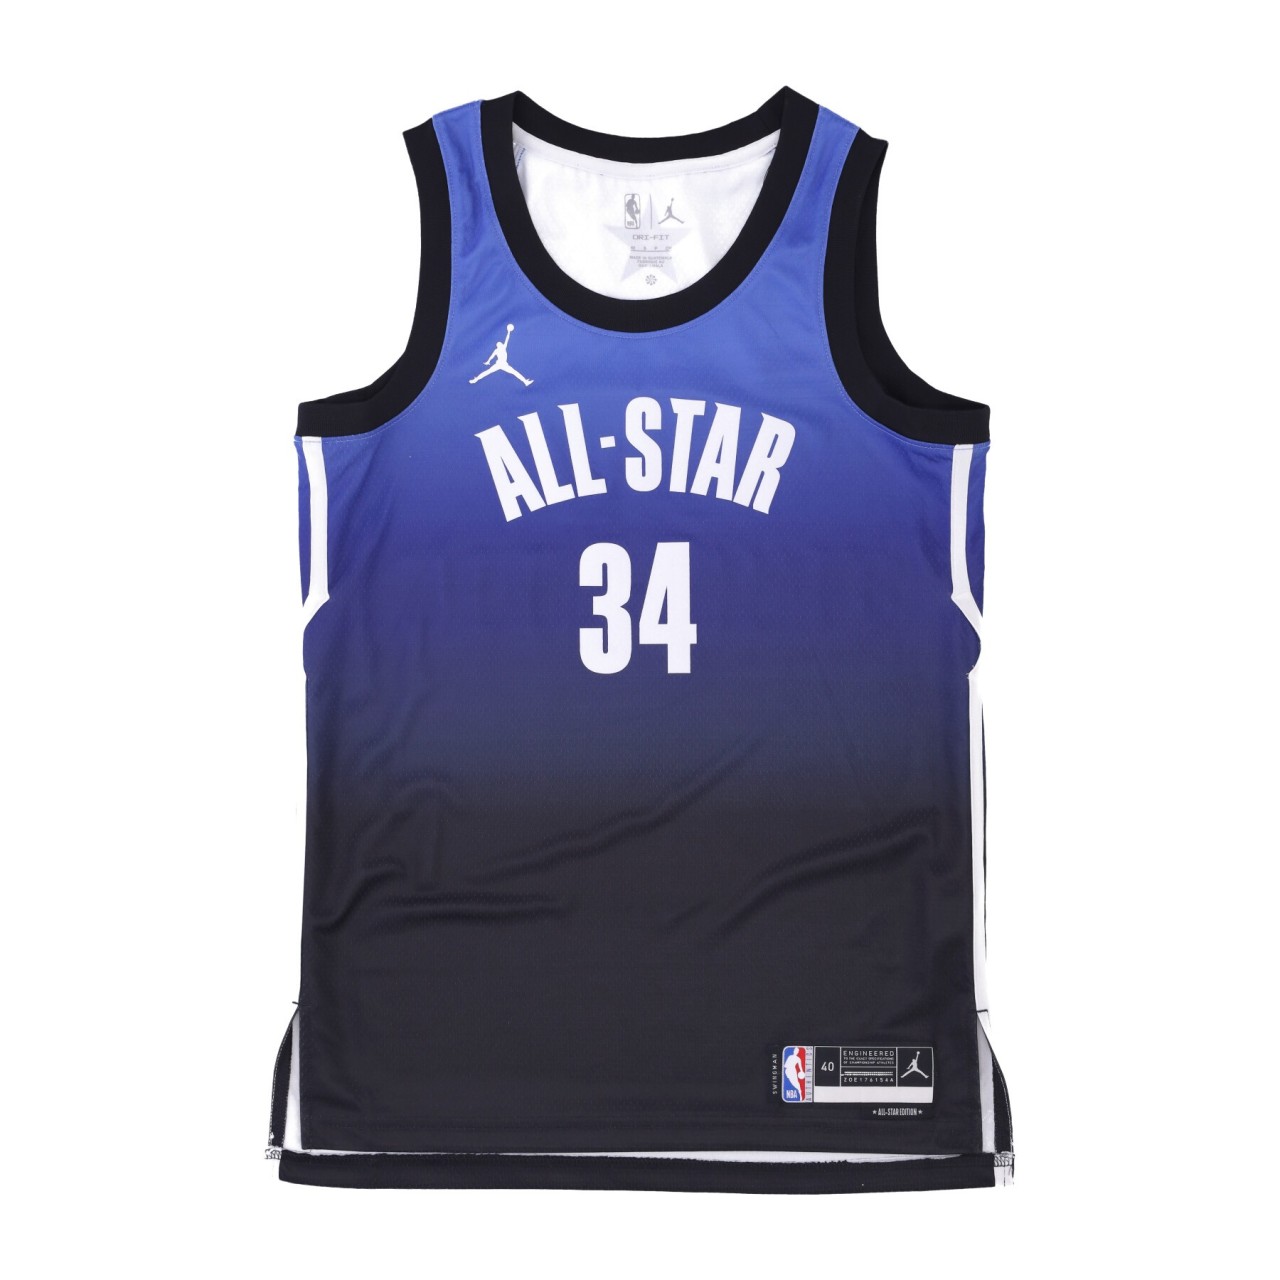 NIKE NBA NBA DRI-FIT SWINGMAN JERSEY NO 34 GIANNIS ANTETOKOUNMPO ALL STAR GAME 23 DX6326-500